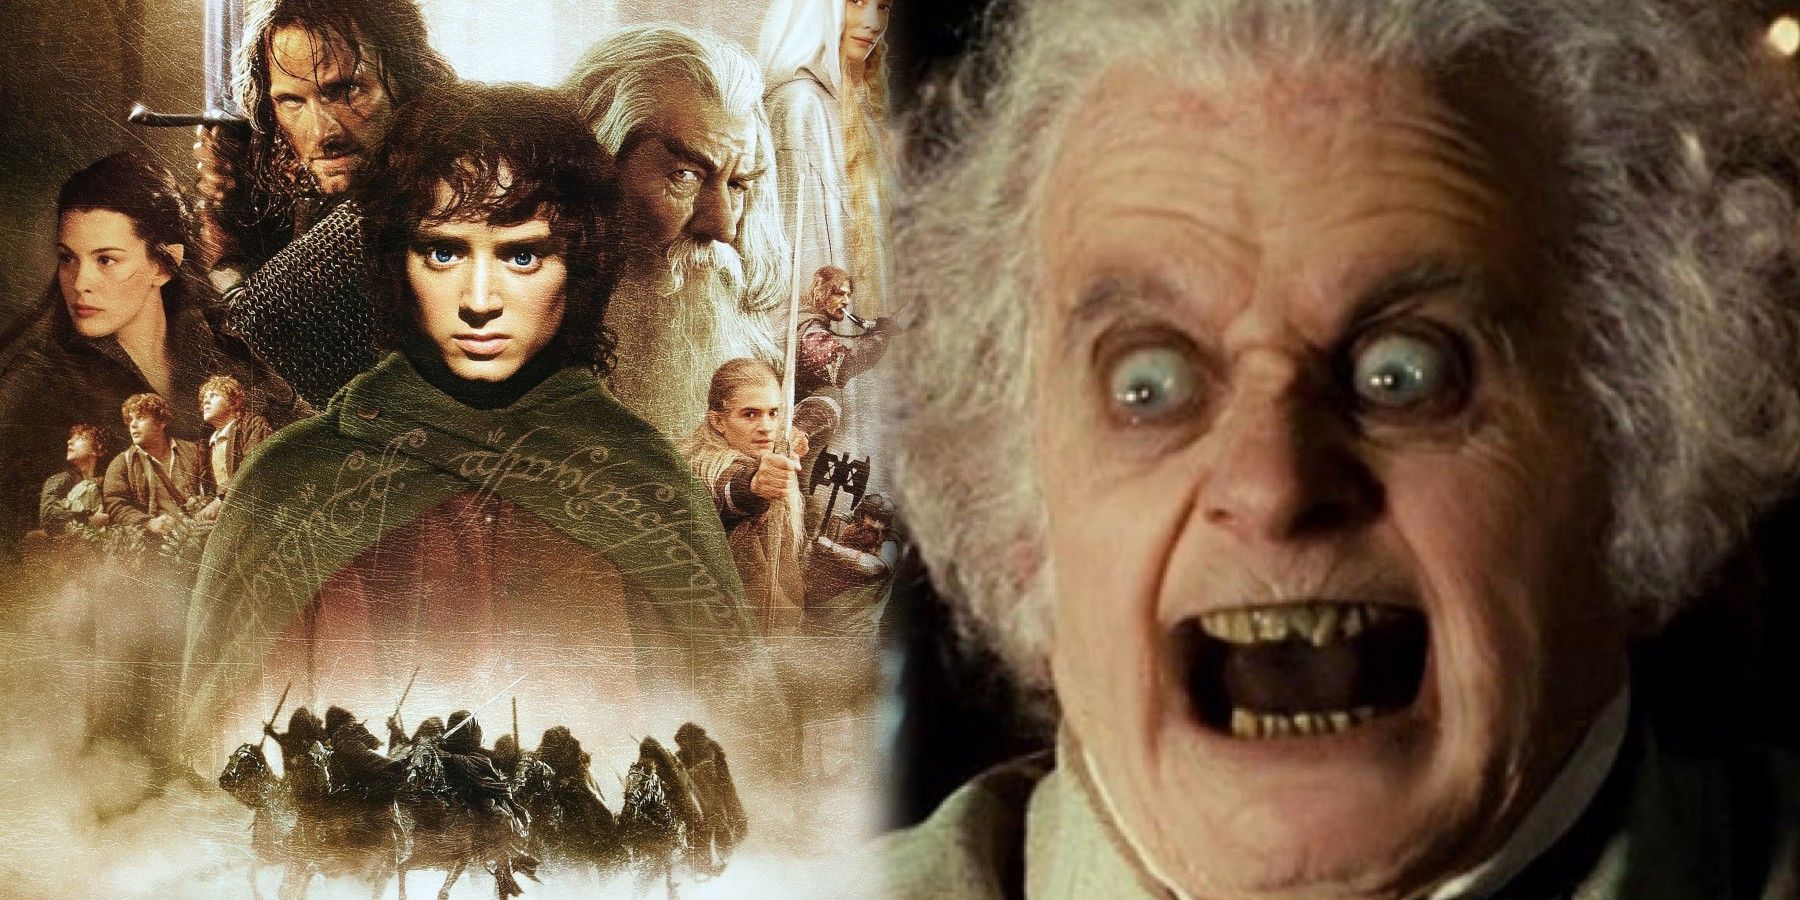 Vídeo hilário recria cena aterrorizante do Senhor dos Anéis Bilbo